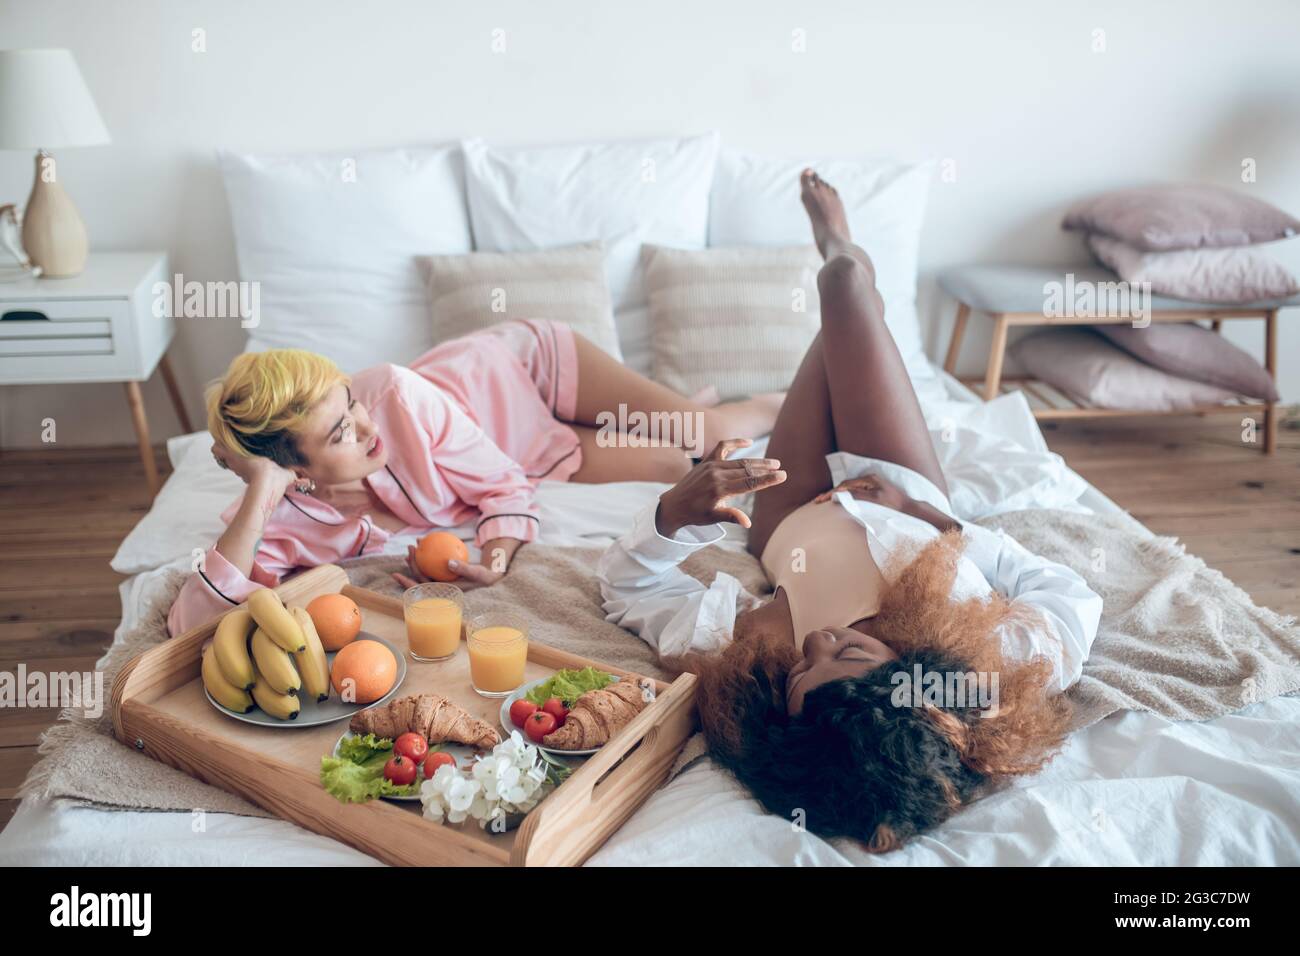 Deux femmes dans des vêtements de couchage couchés sur le lit communiquant Banque D'Images